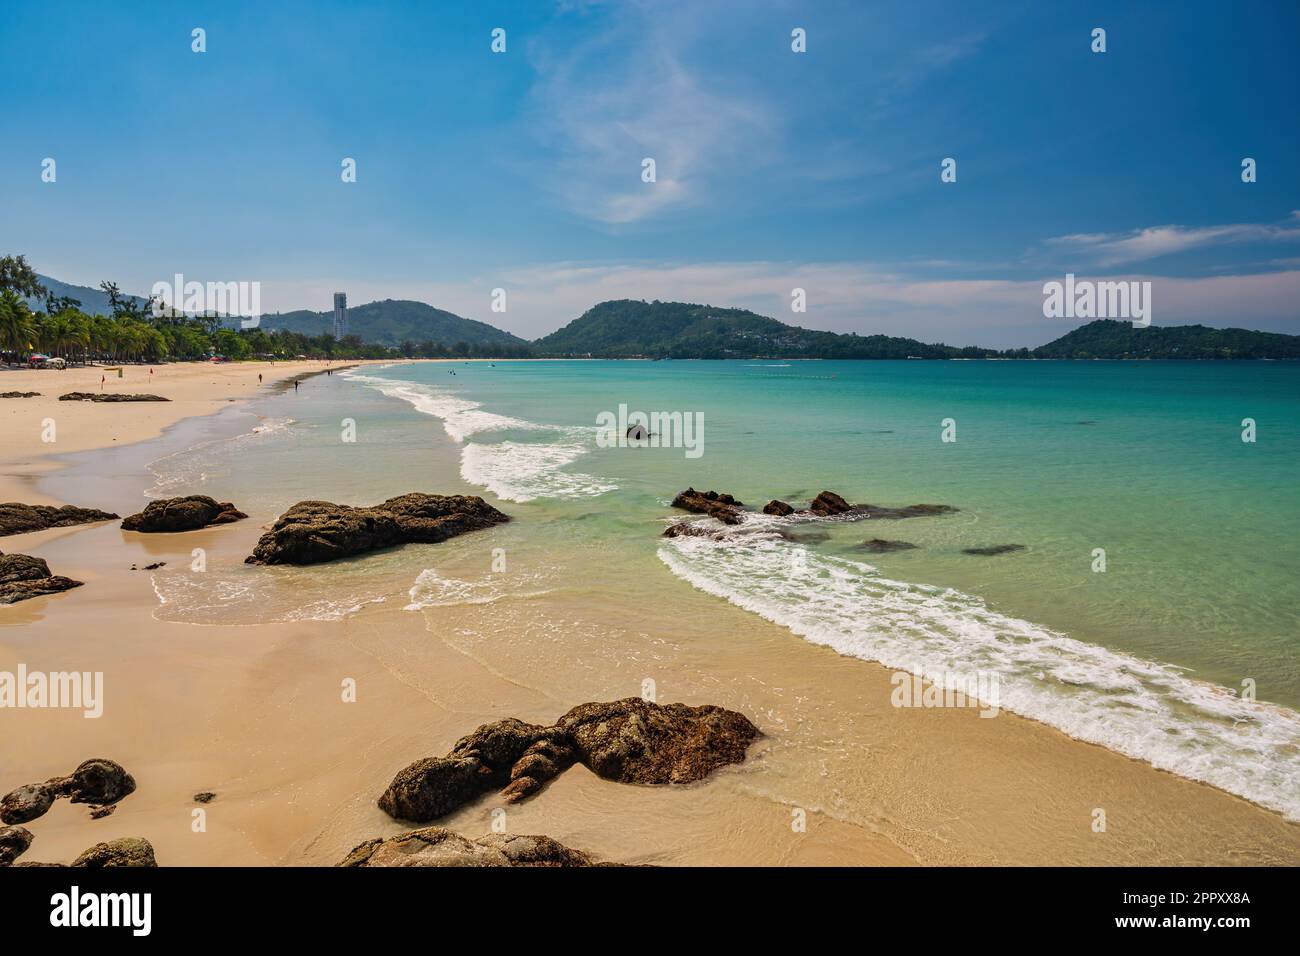 Vue sur les îles tropicales avec mer bleu océan et plage de sable blanc à Patong Beach, Phuket Thaïlande nature paysage Banque D'Images